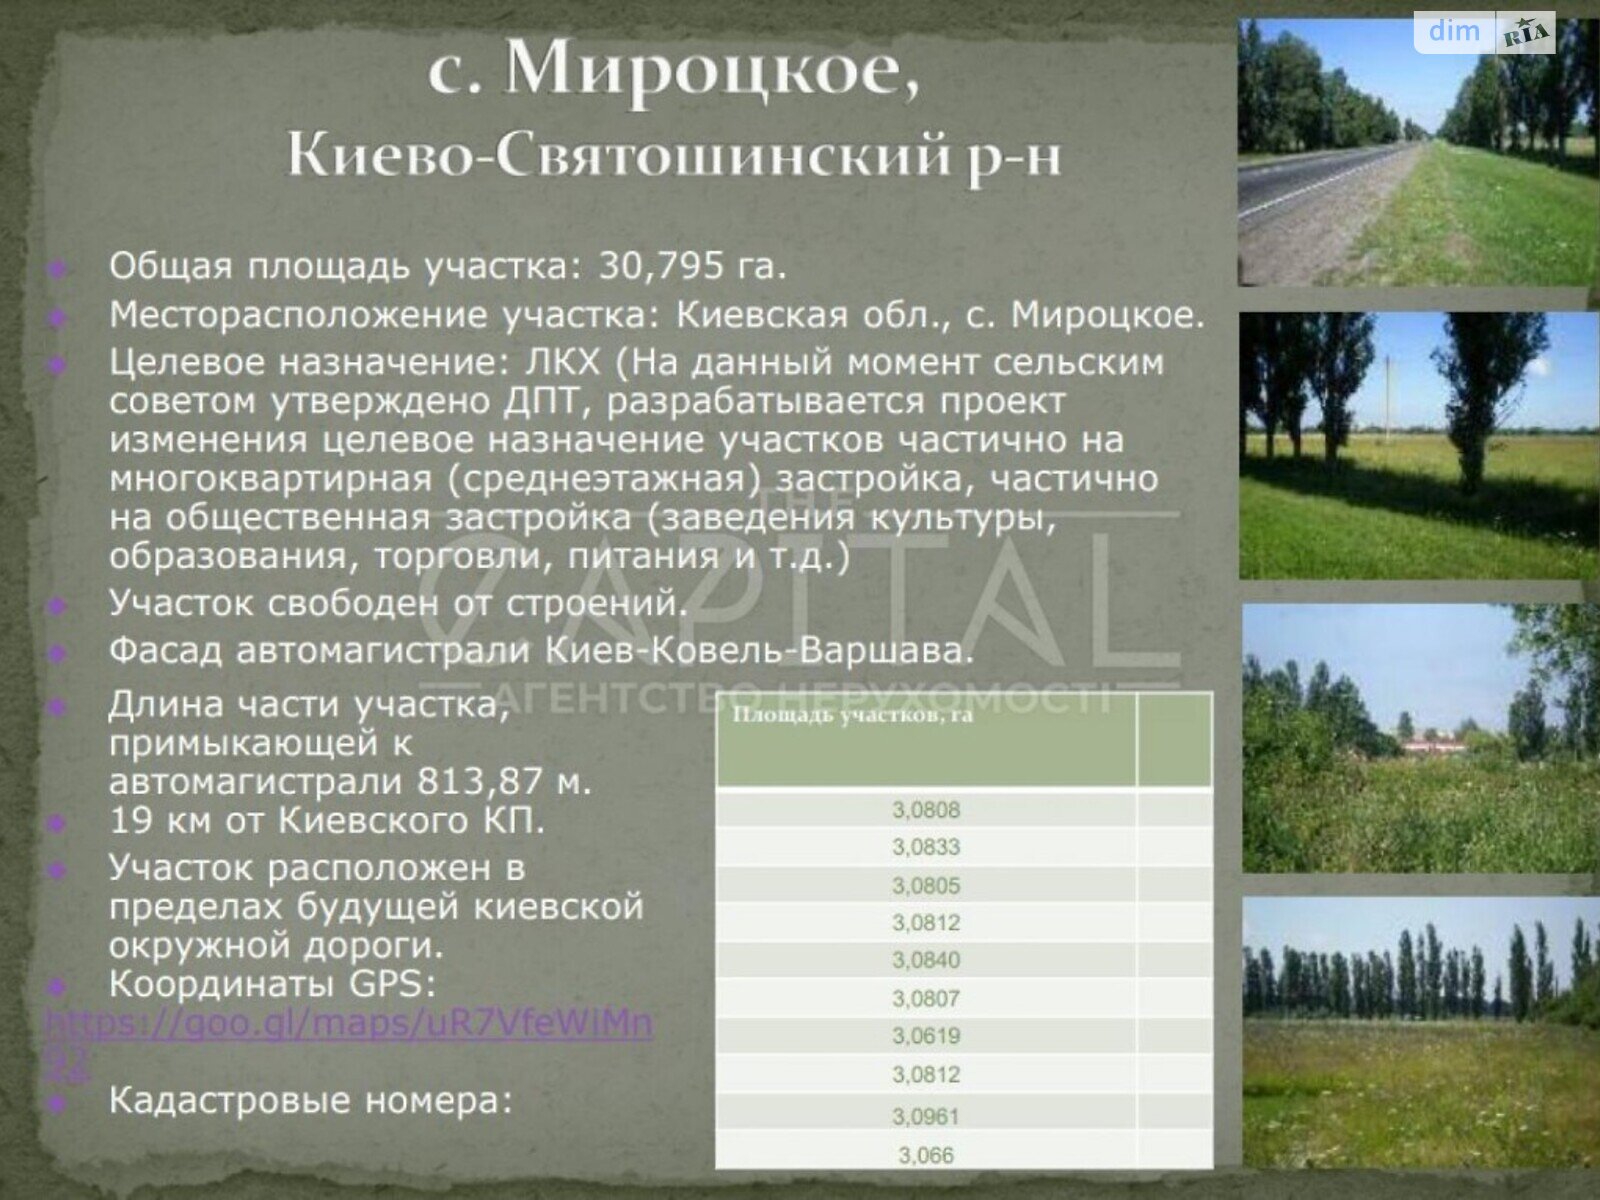 Земельный участок сельскохозяйственного назначения в Мироцком, площадь 30795 Га фото 1